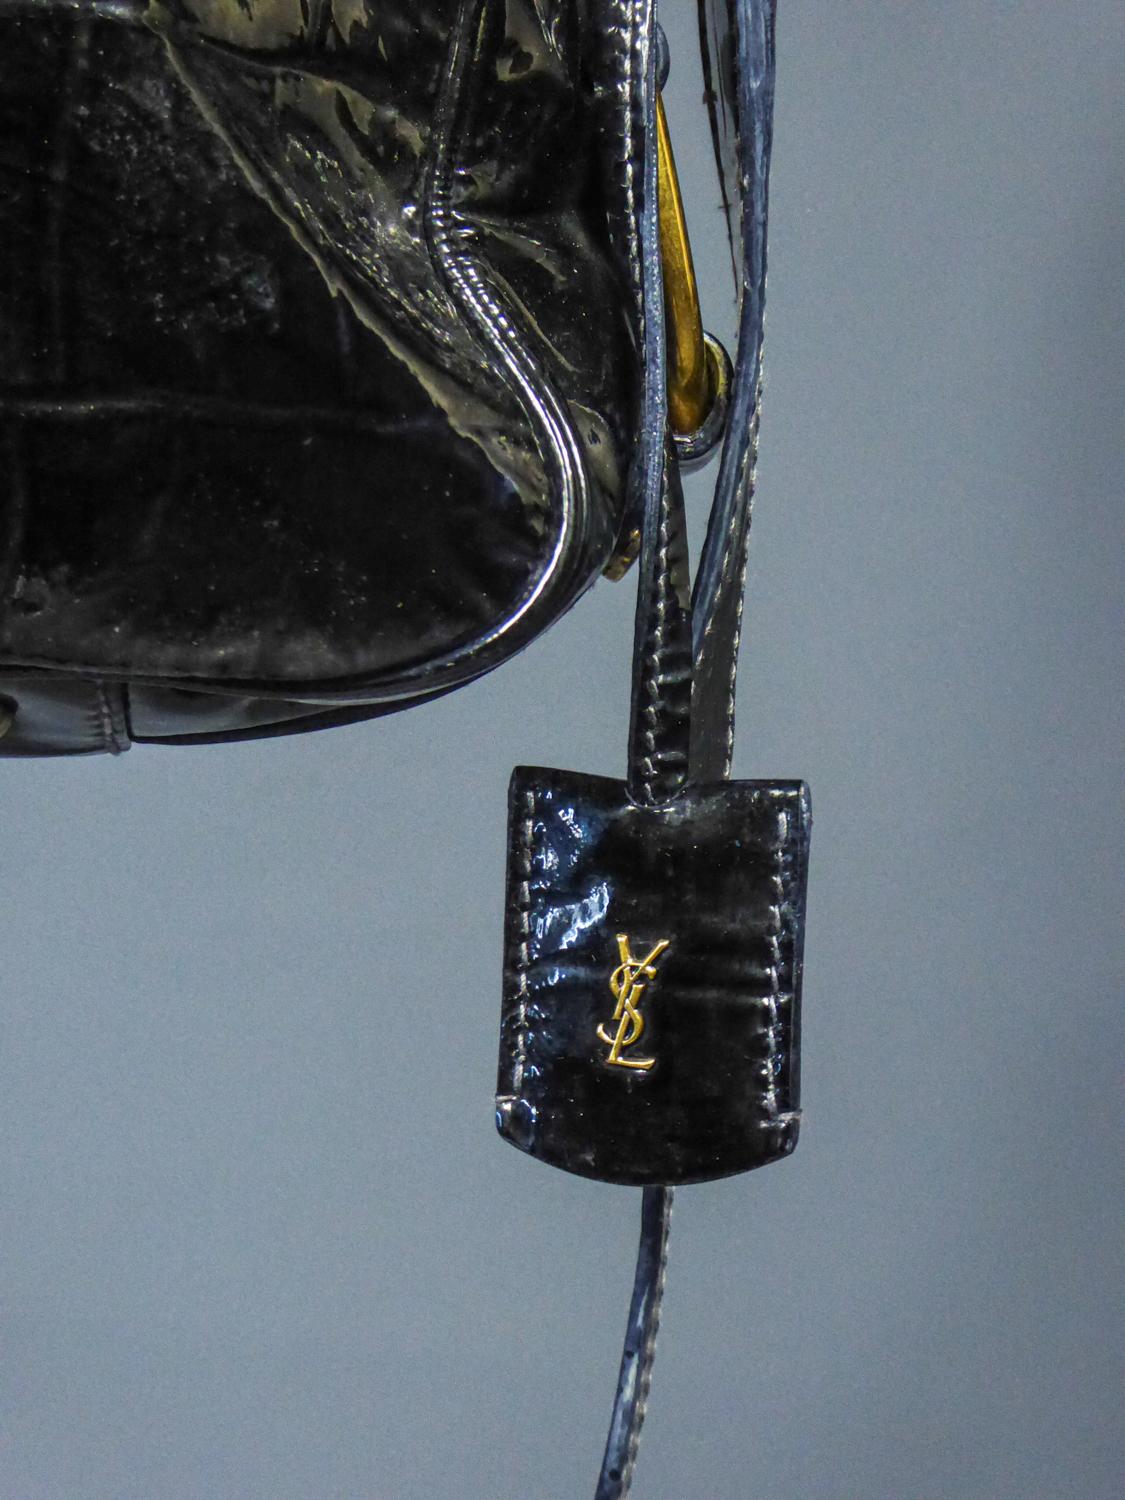 Ca. 1990/2000
Frankreich

Vintage-Handtasche aus schwarzem Lackleder, das eine zerkratzte Haut imitiert, von Yves Saint Laurent Rive Gauche aus den späten 2000er Jahren. Inspiriert von den 1940er Jahren und dem Geist der Sahara für diese Tasche mit